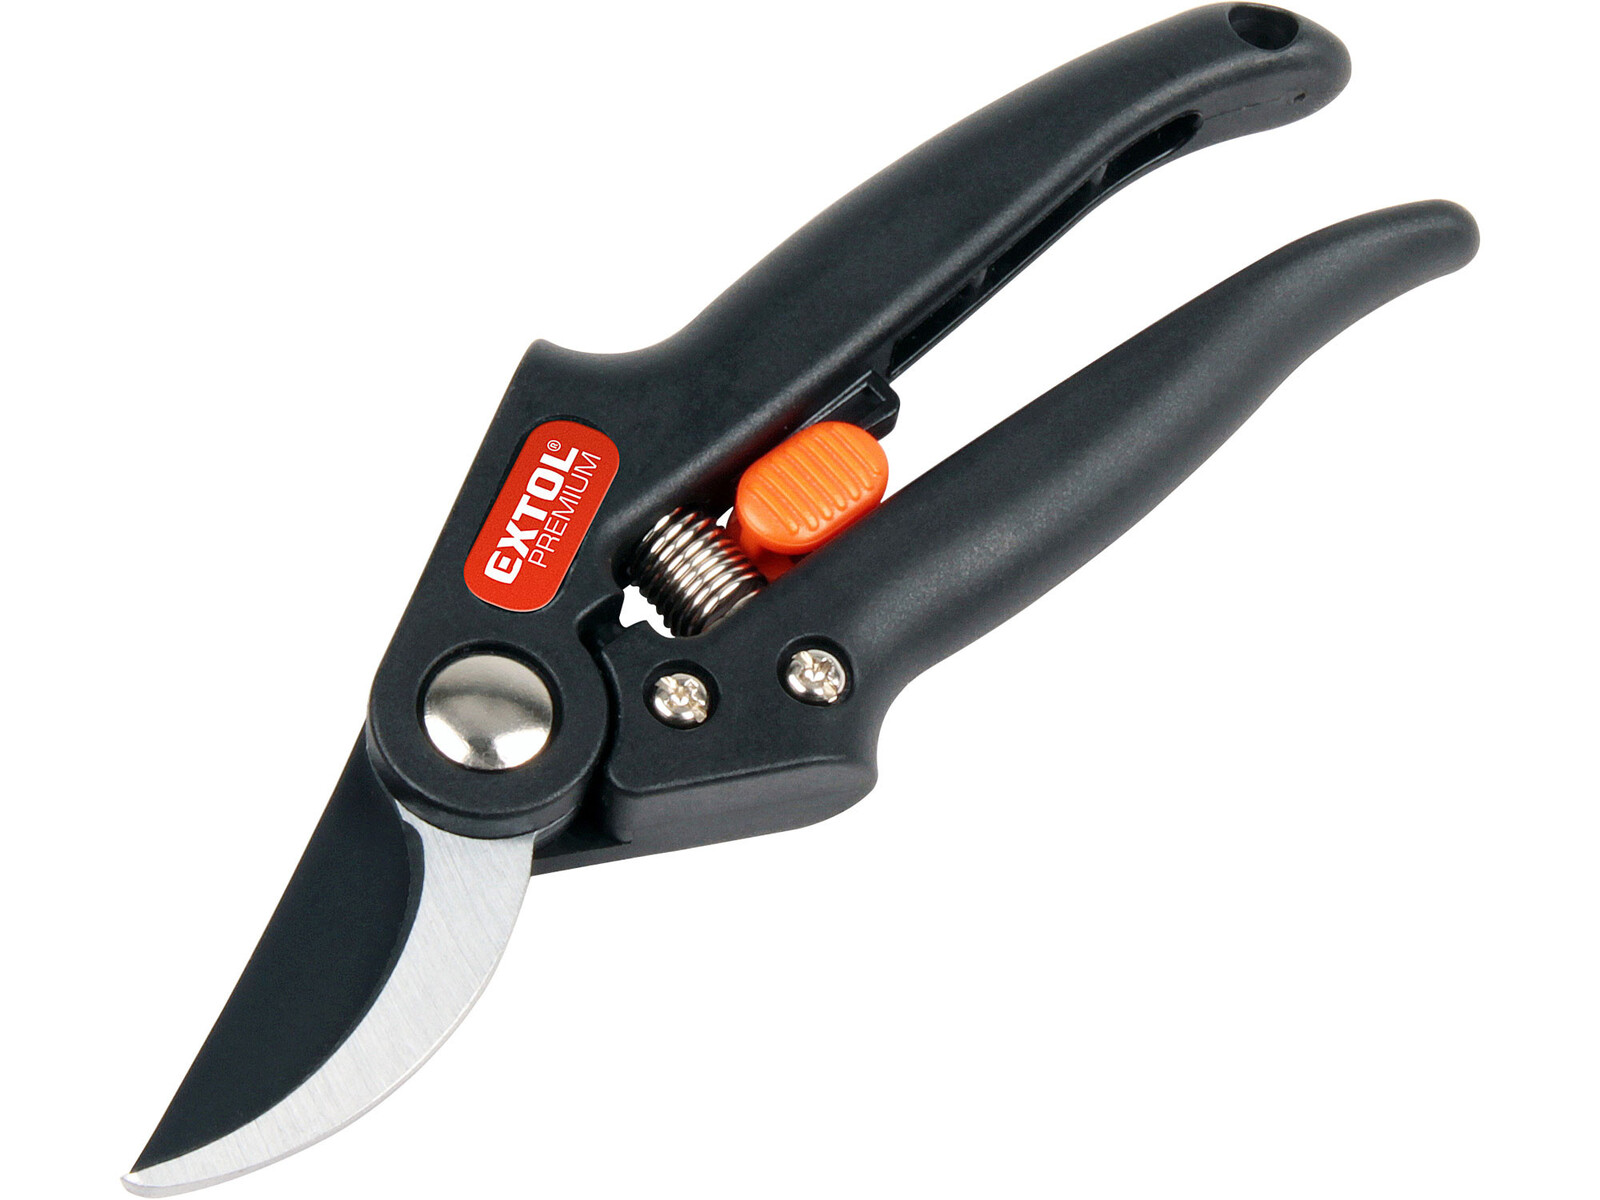 Extol Premium 8872160 nožnice záhradnícke, 190mm, max. prestrih priemer 20mm, SK5 - farba: čierna/oranžová